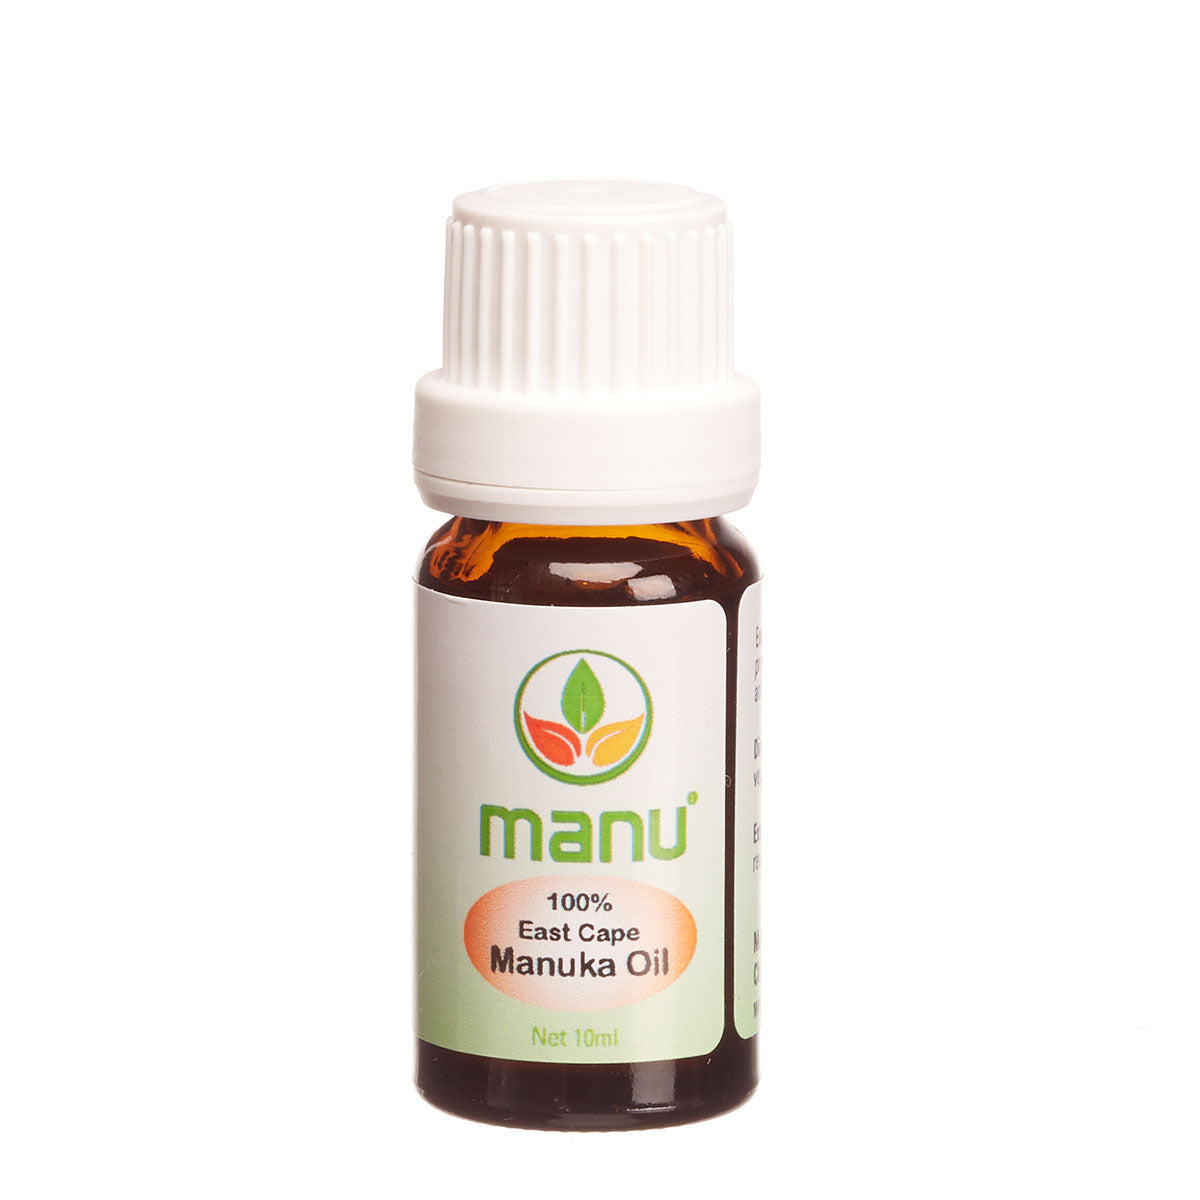 Antibacterial properties of Manuka oil